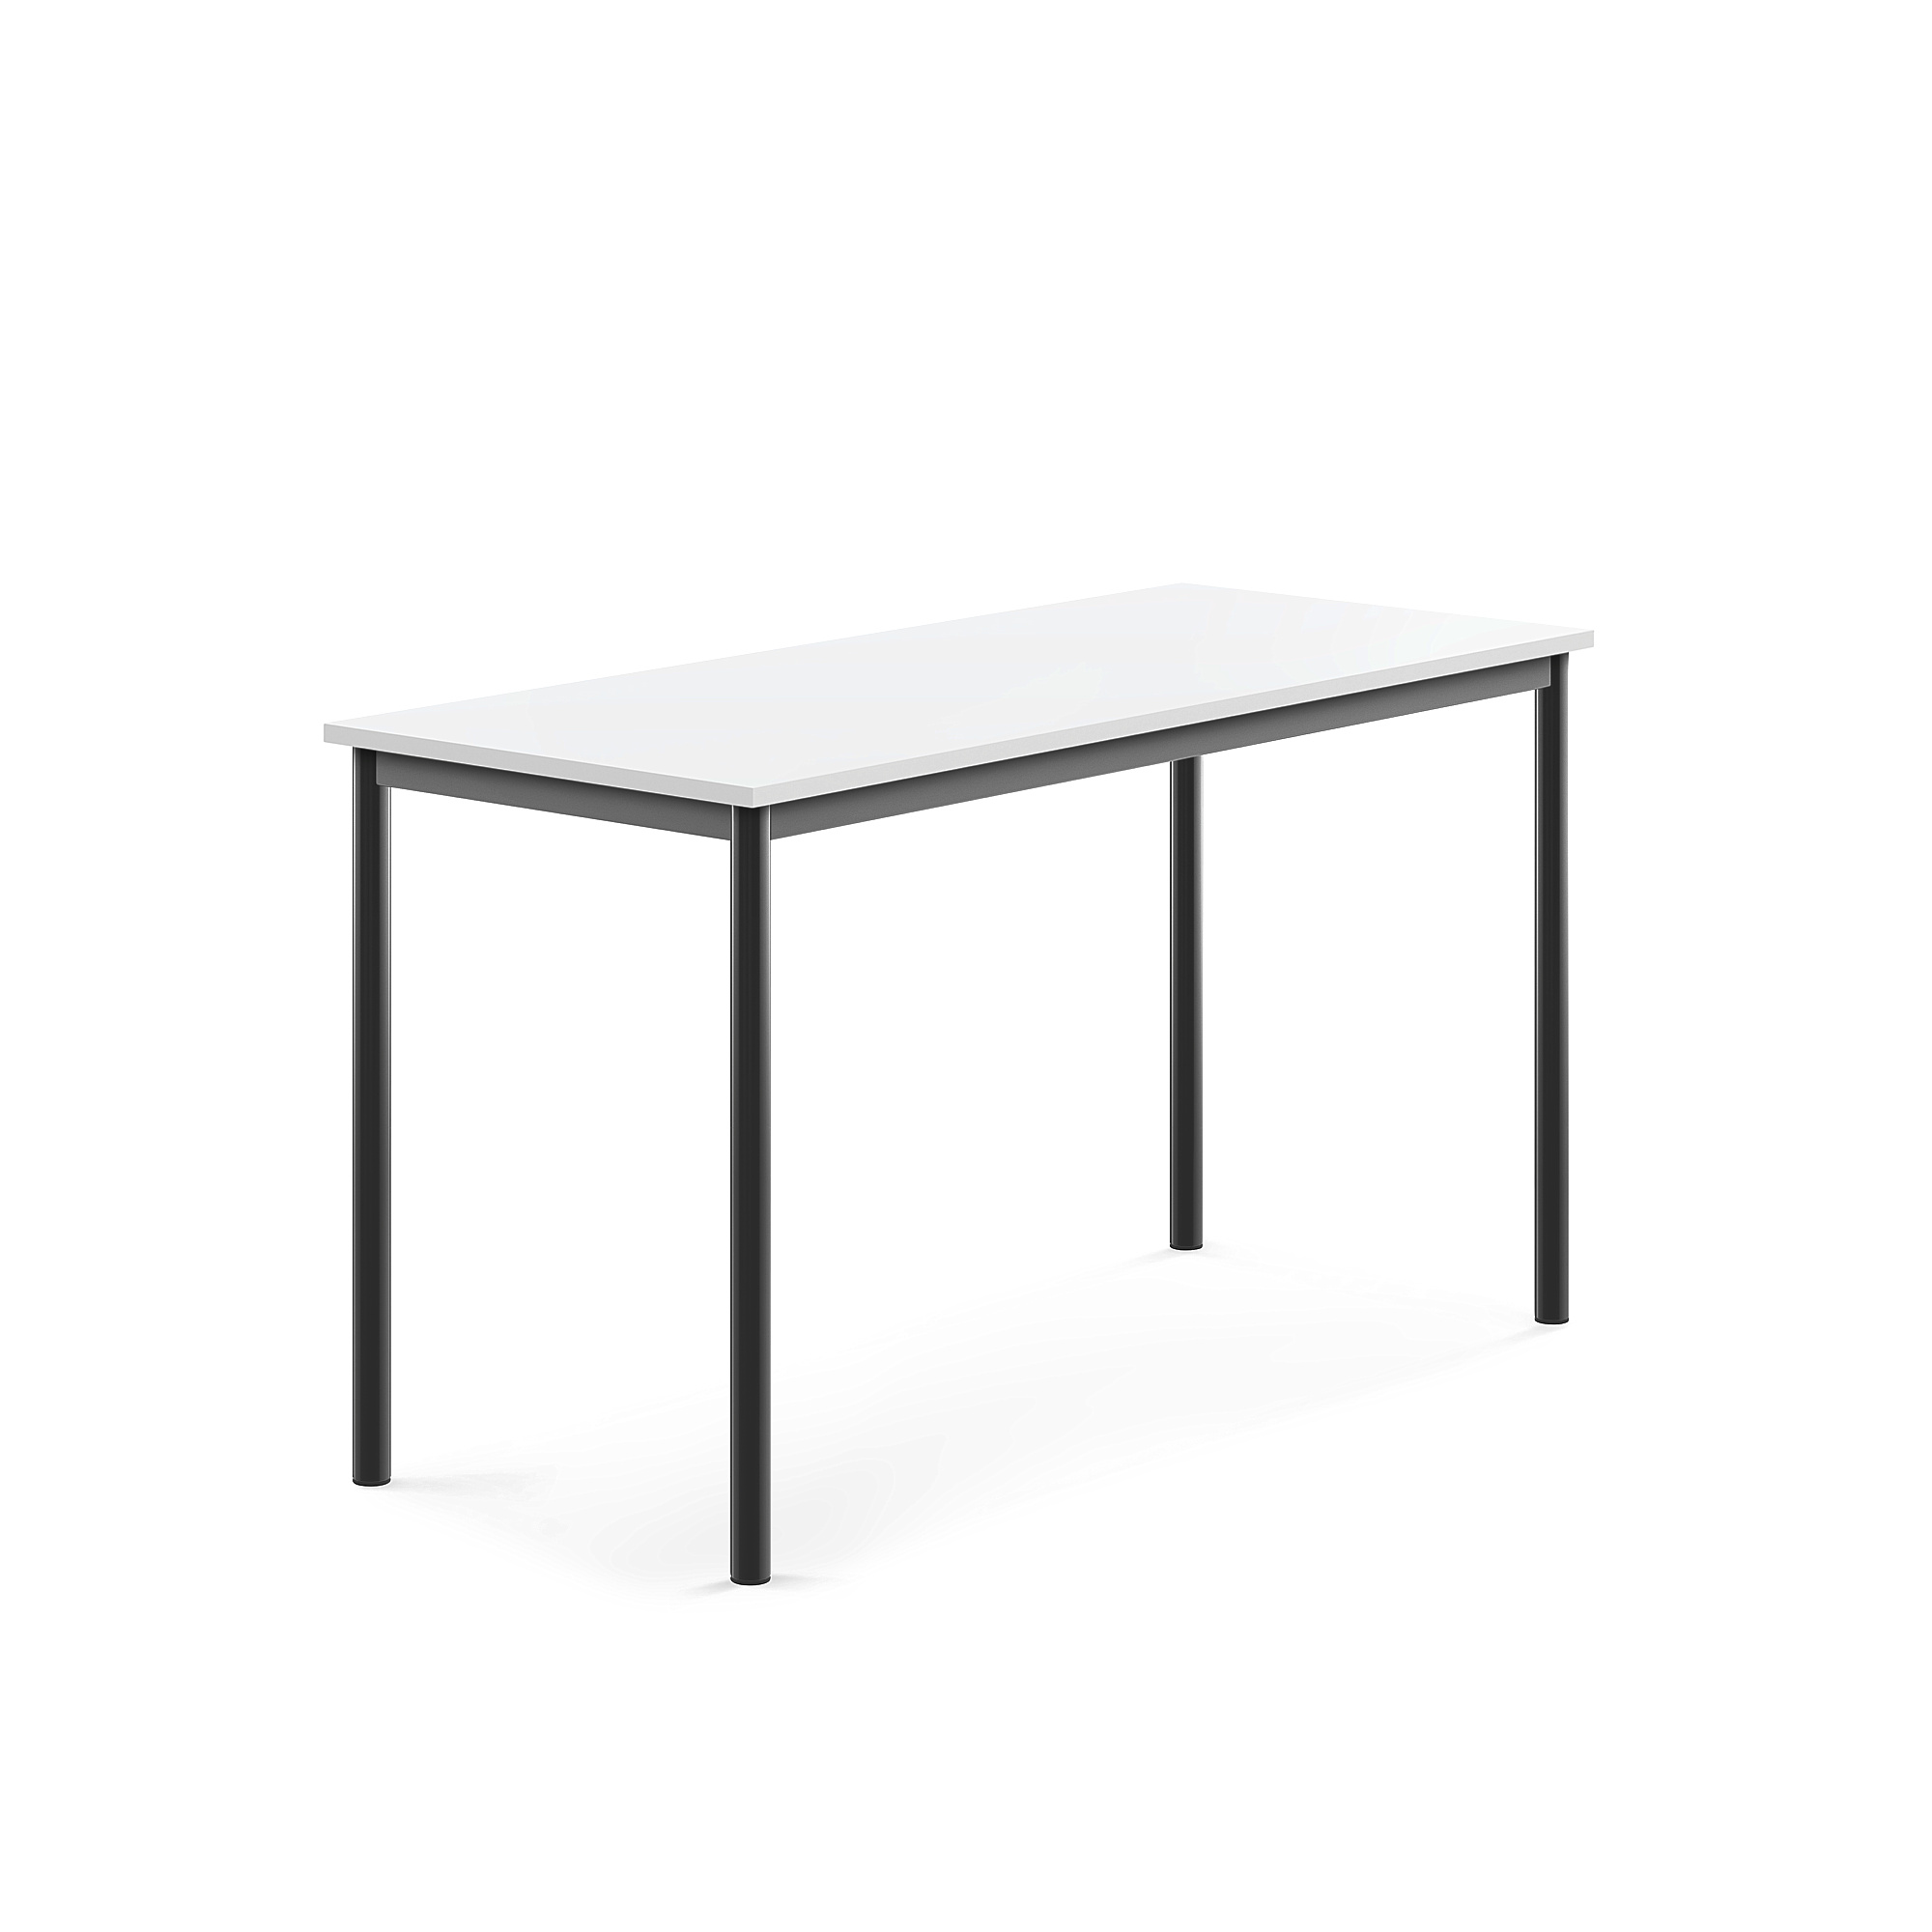 Stůl SONITUS, 1400x600x760 mm, antracitově šedé nohy, HPL deska tlumící hluk, bílá